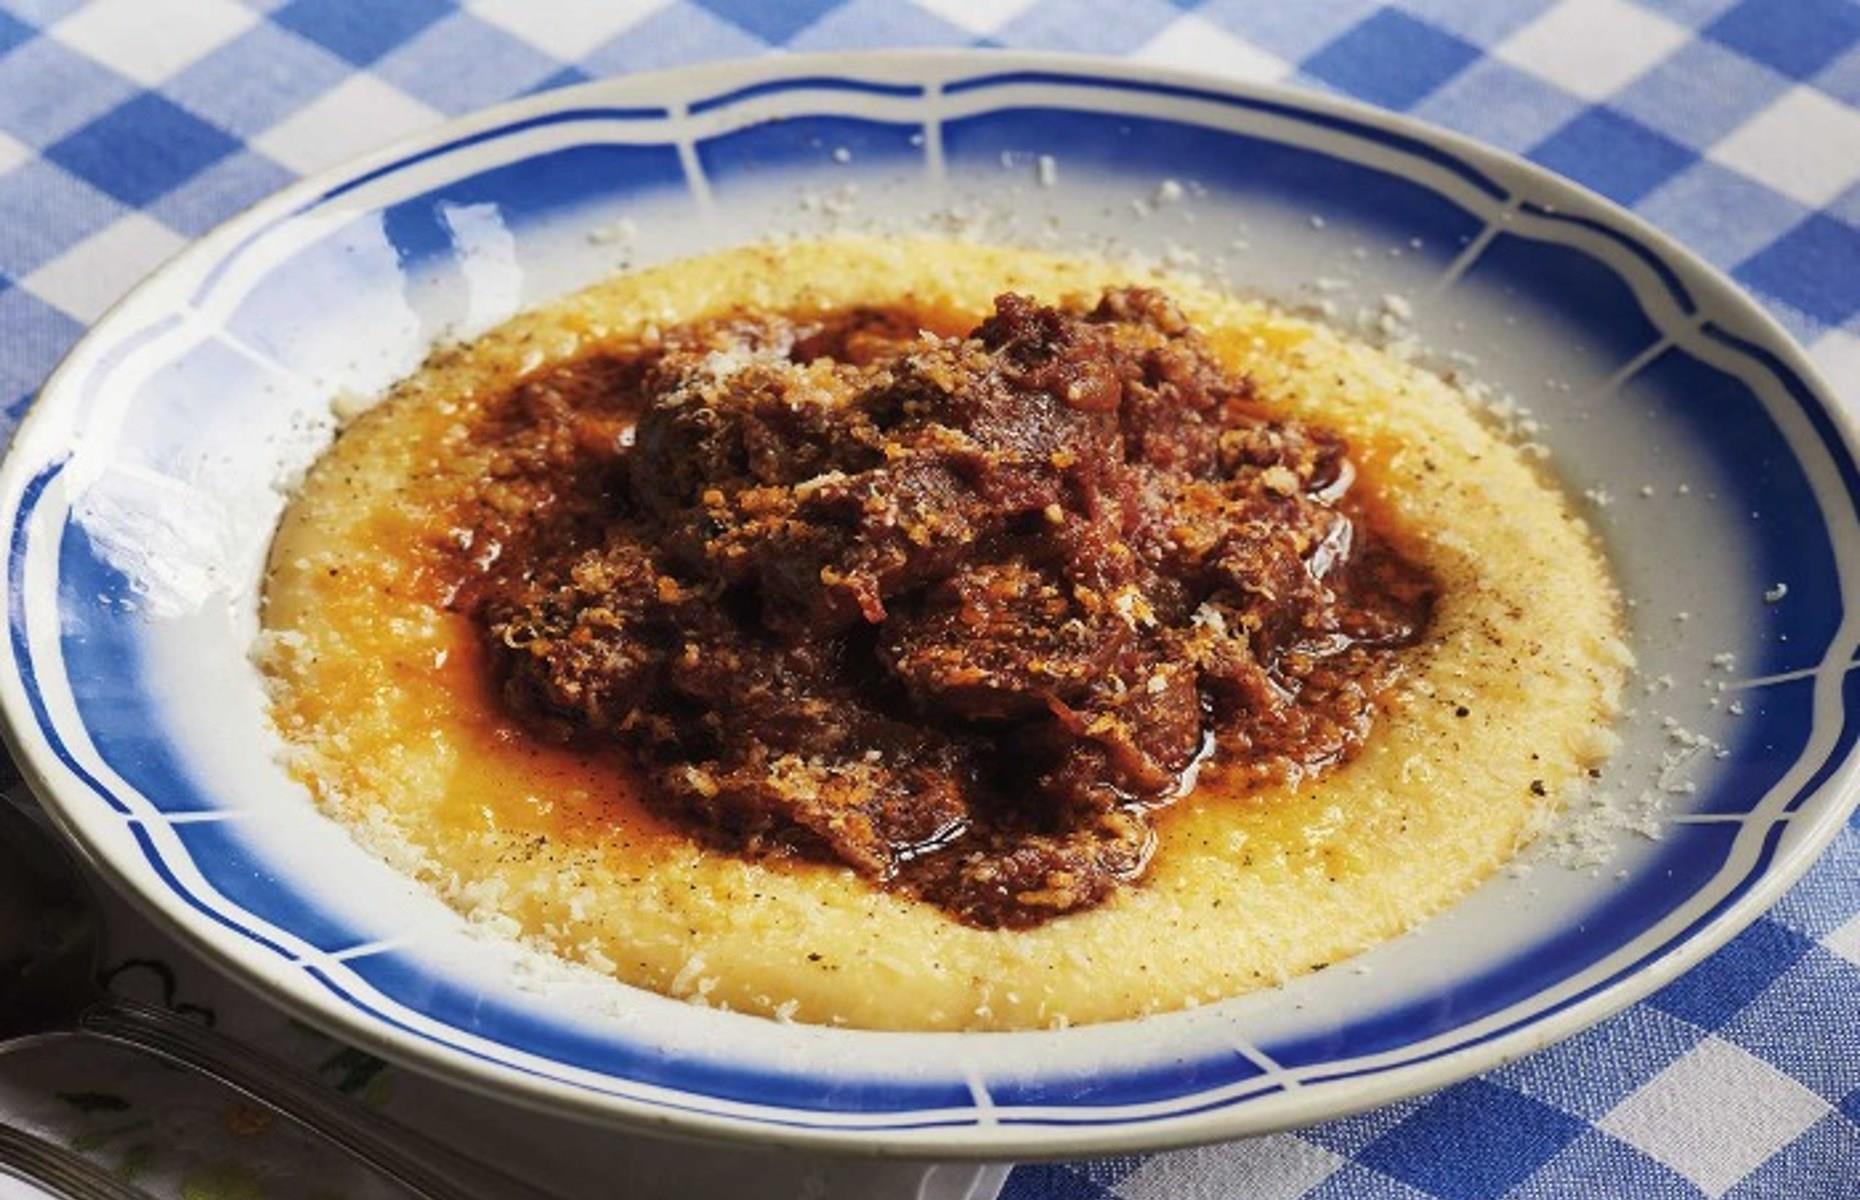 44 incredibly delicious Italian recipes anyone can make at home